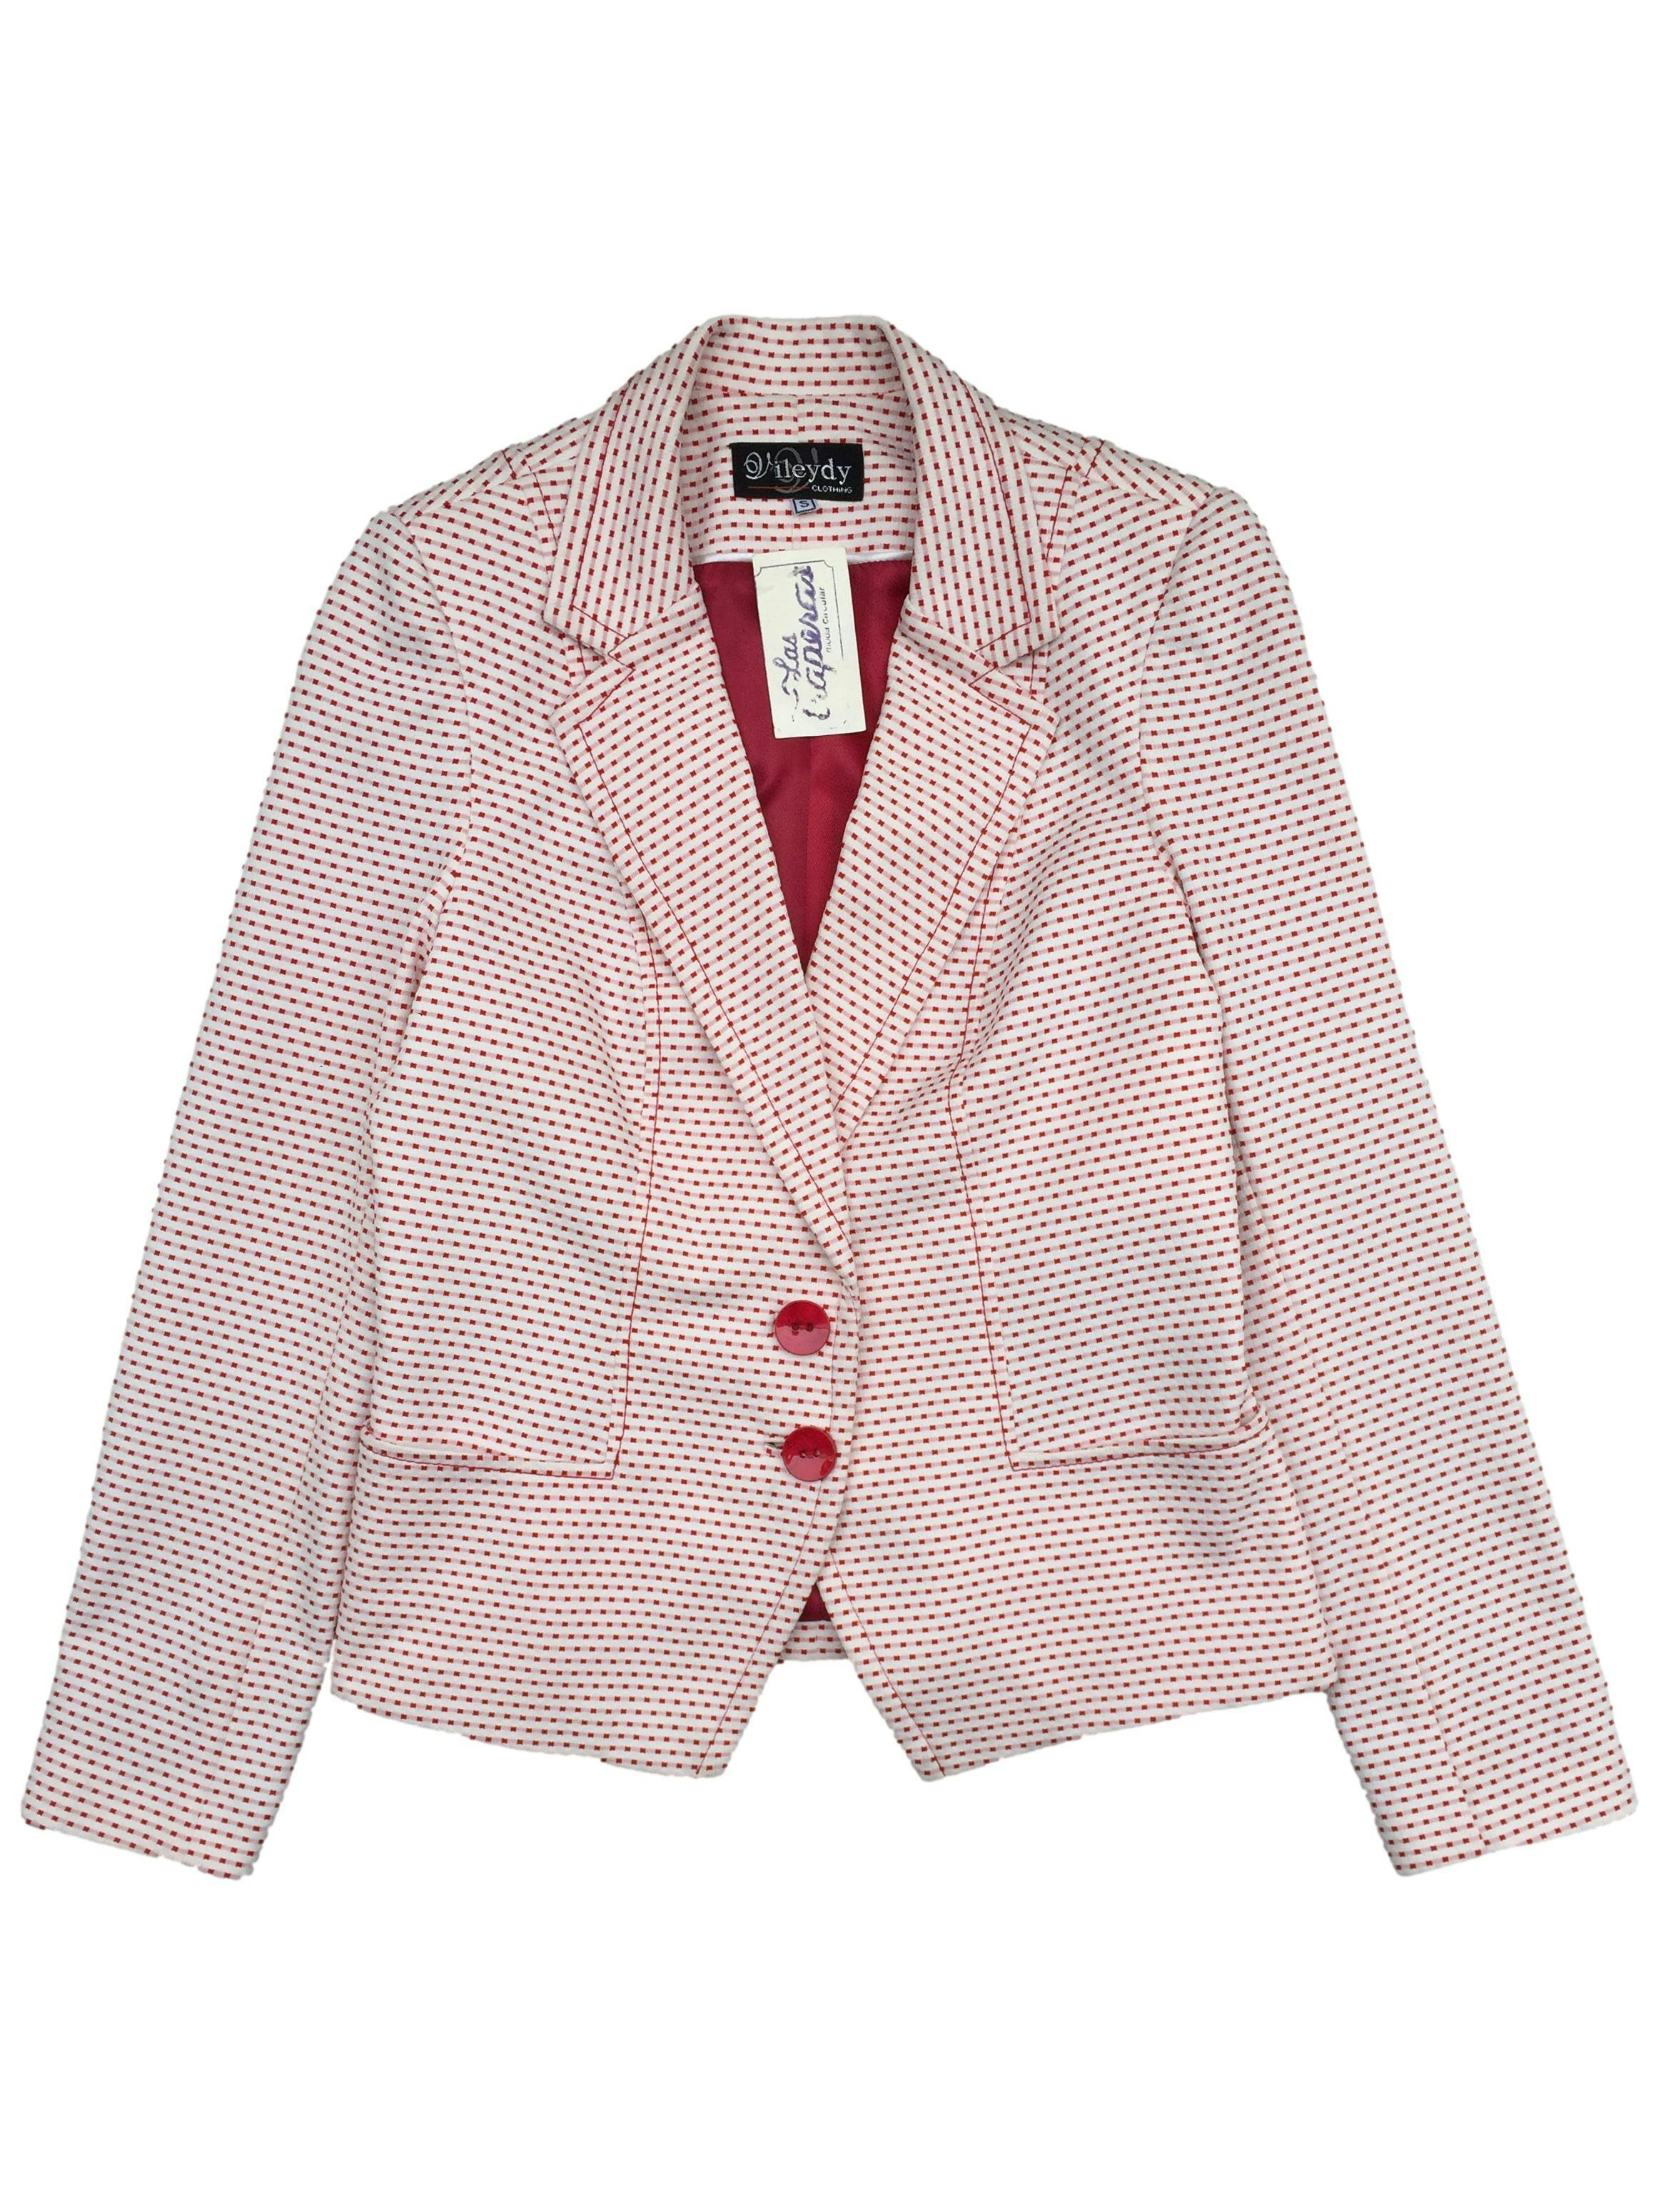 Blazer blanco con cuadraditos rojos 45% lana, corte recto, bolsillos delanteros, botones en mangas. Busto 100cm, Largo 57cm